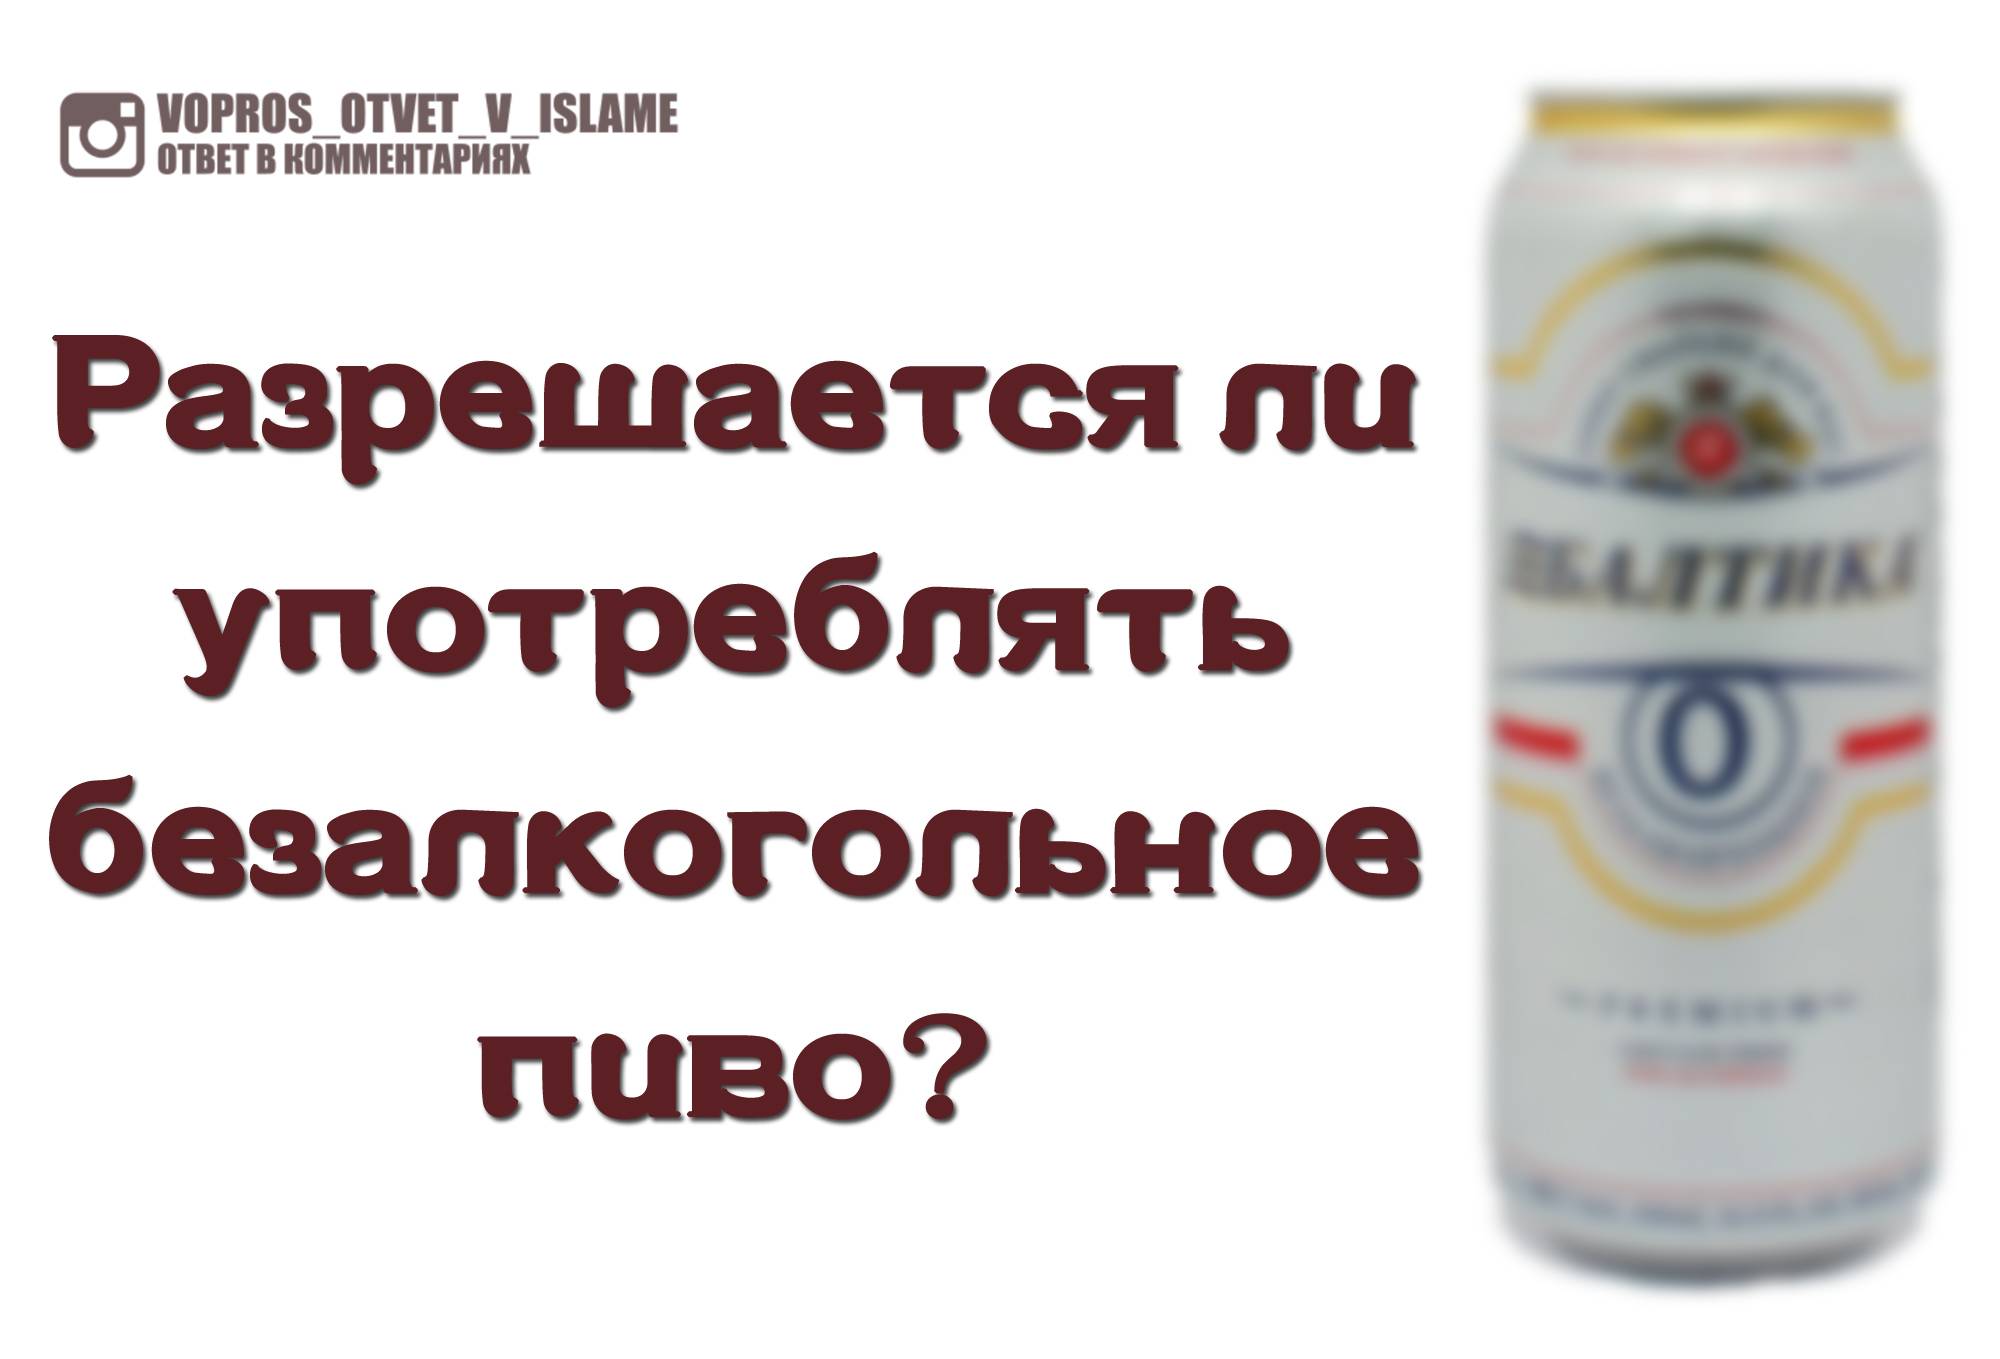 Безалкогольное пиво при грудном вскармливании: можно ли пить во время гв, с какого времени, есть ли польза, что на этот счет говорит комаровский?